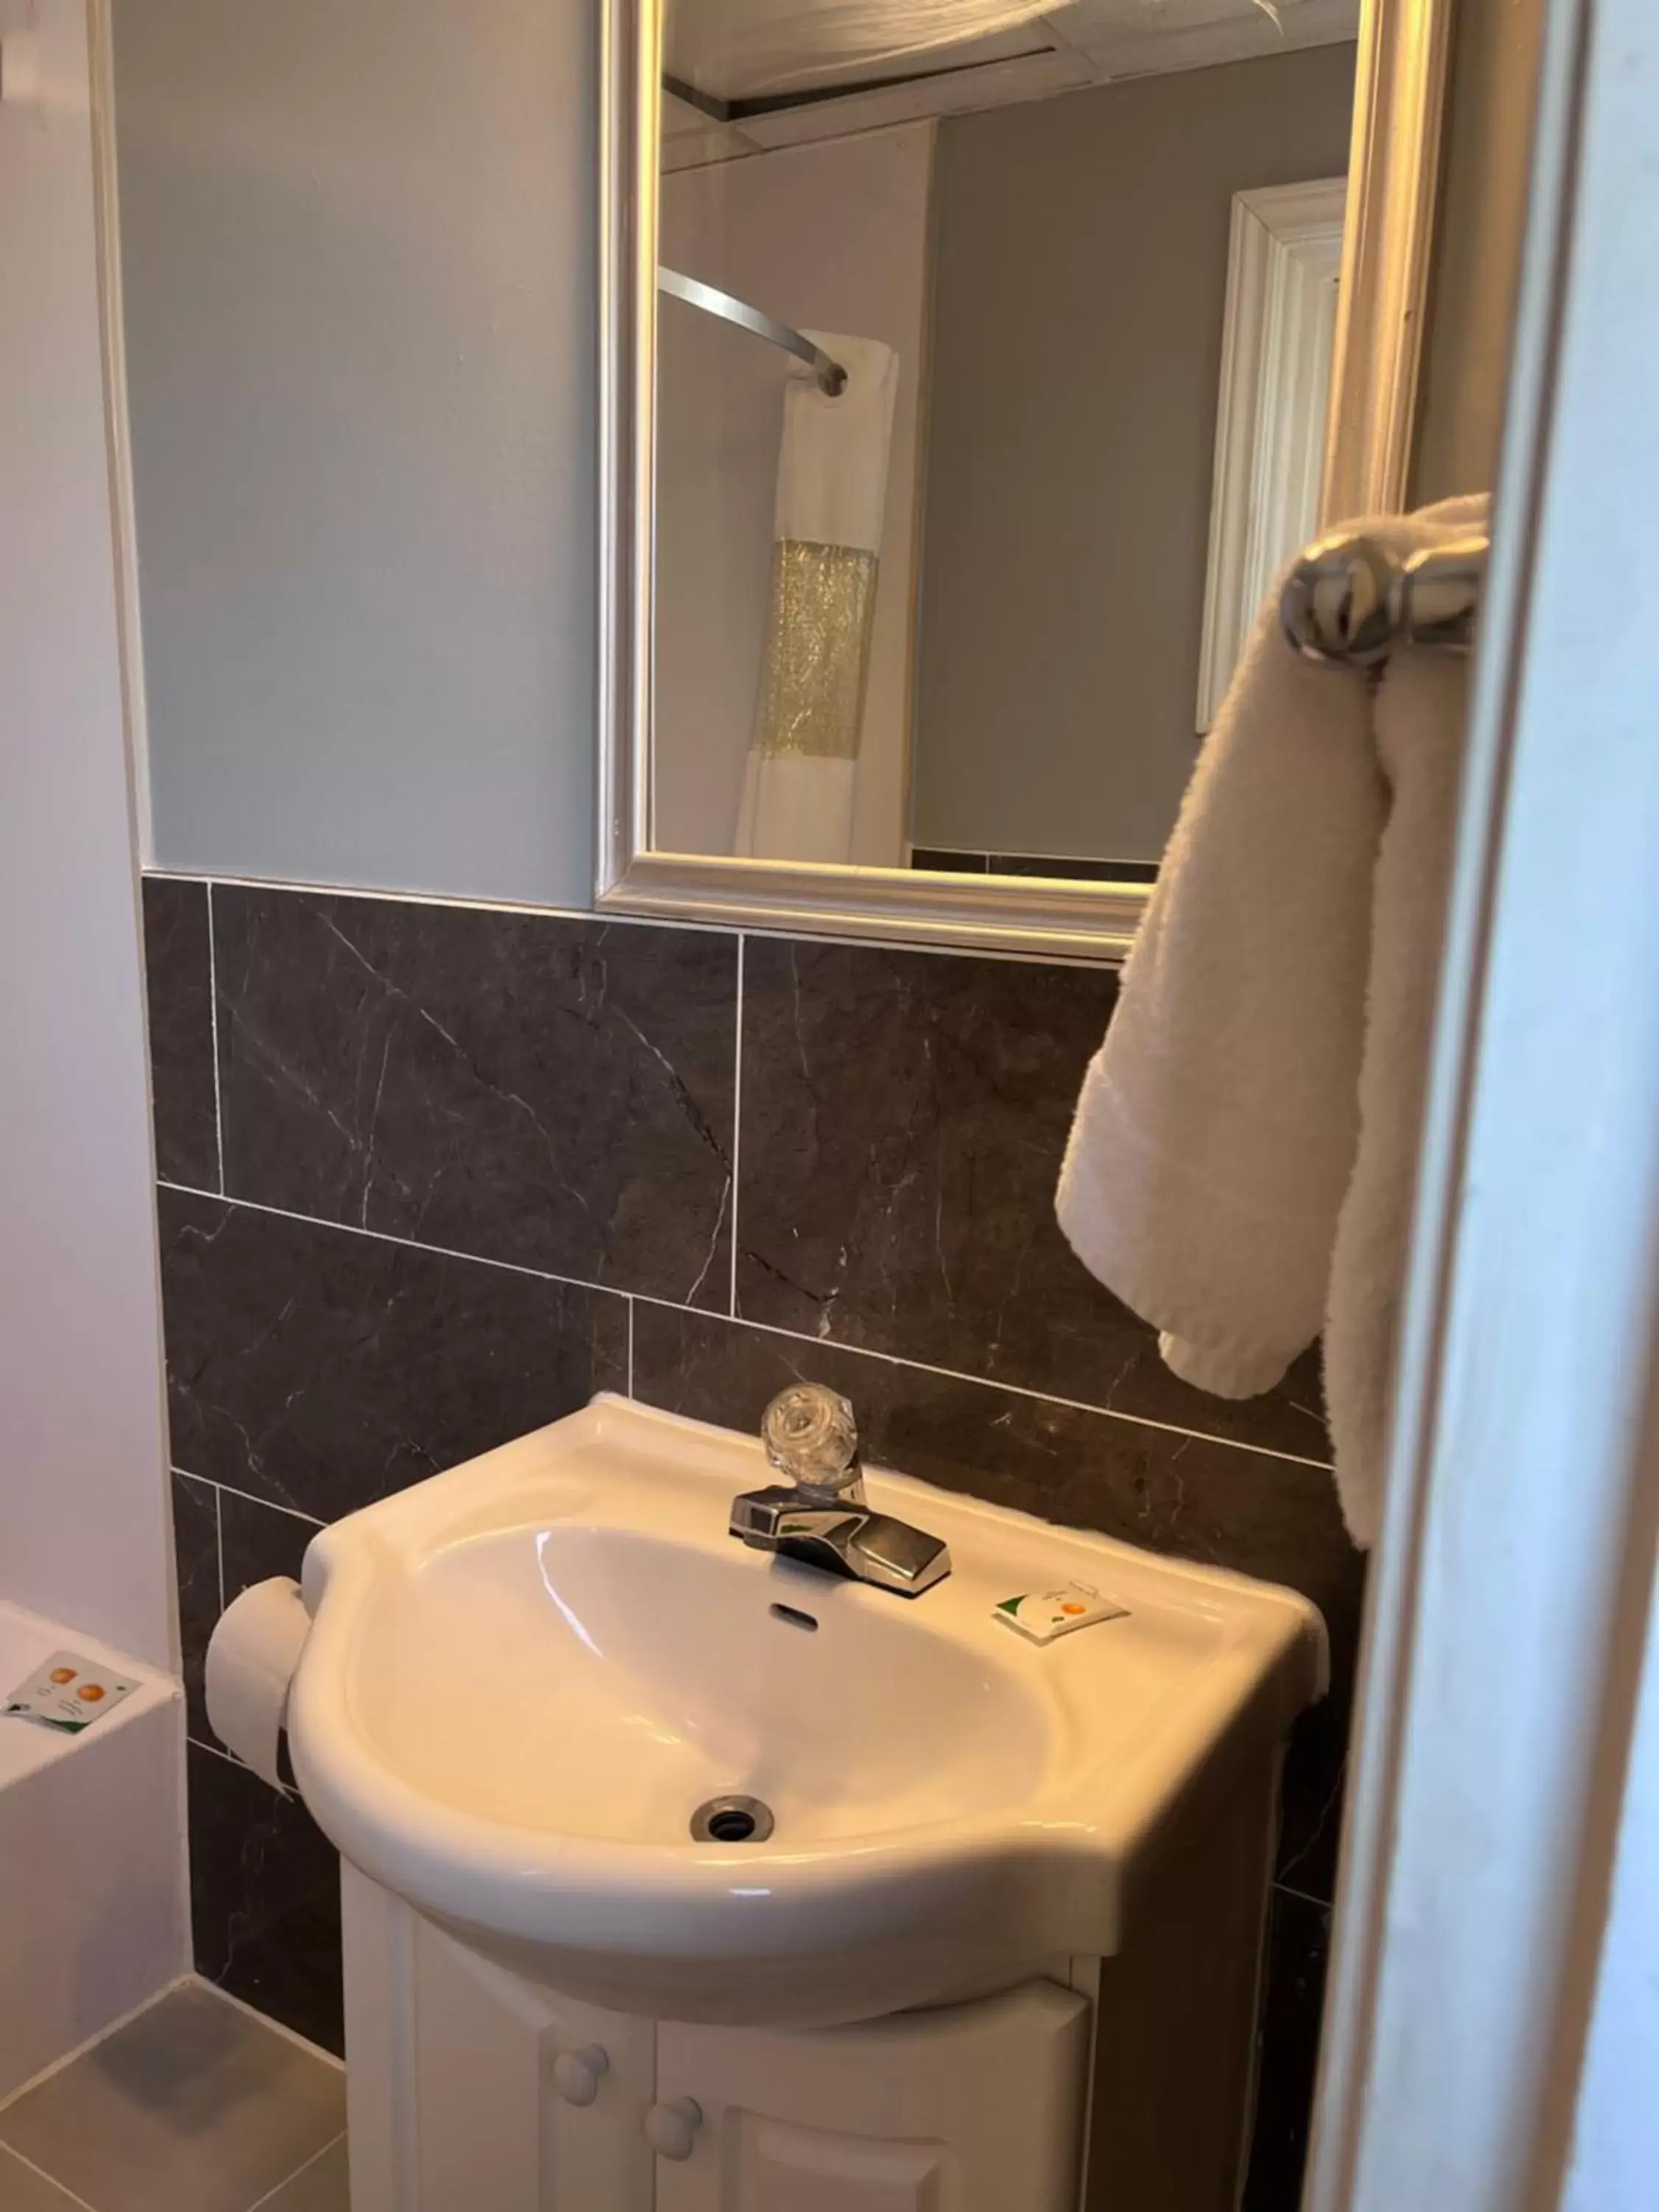 Bathroom in Knights Inn - Park Villa Motel, Midland